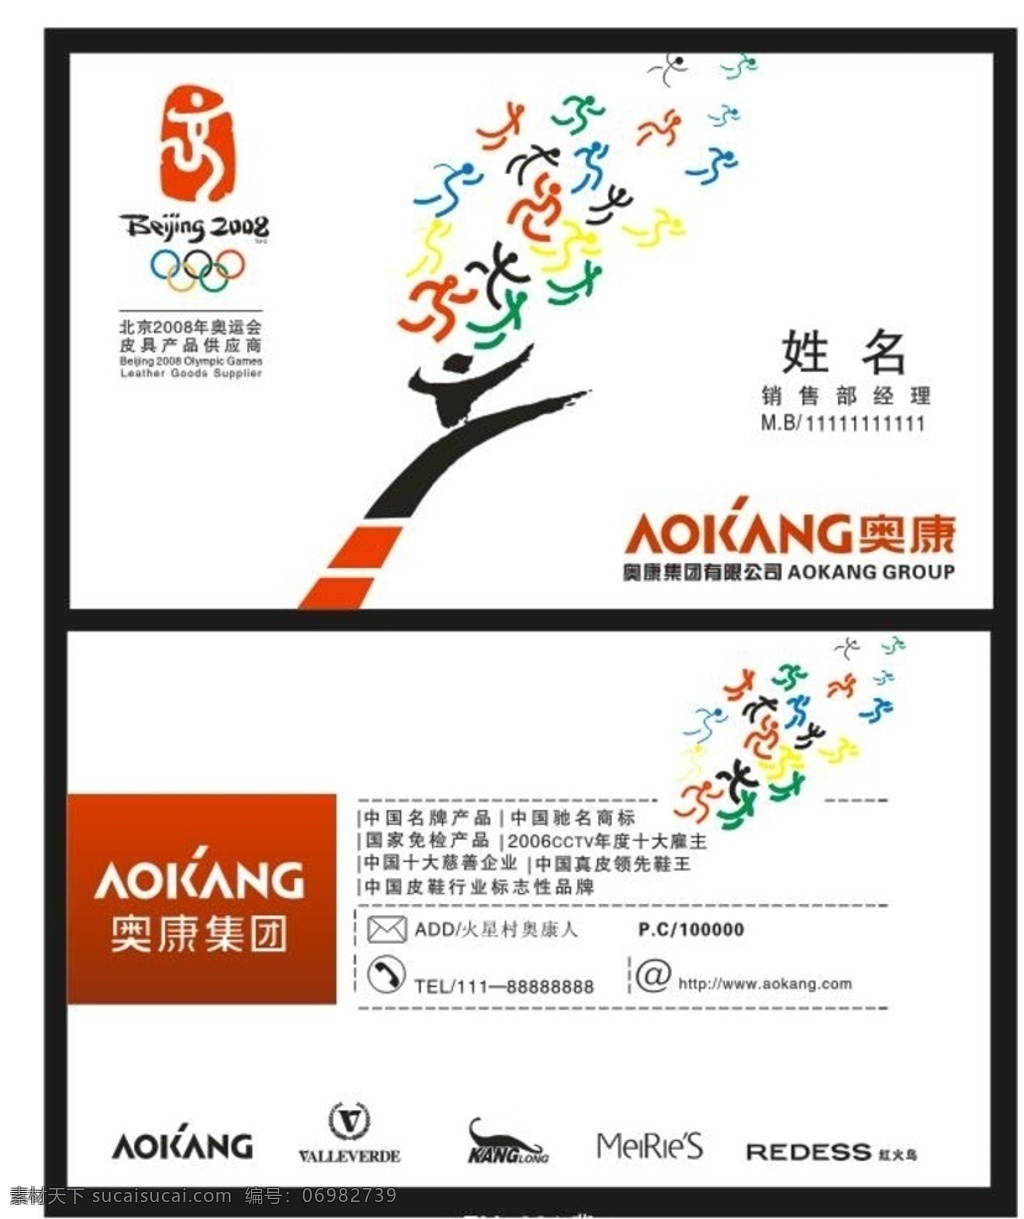 奥康名片 北京 2008 奥运 集团 运动会 名片卡片